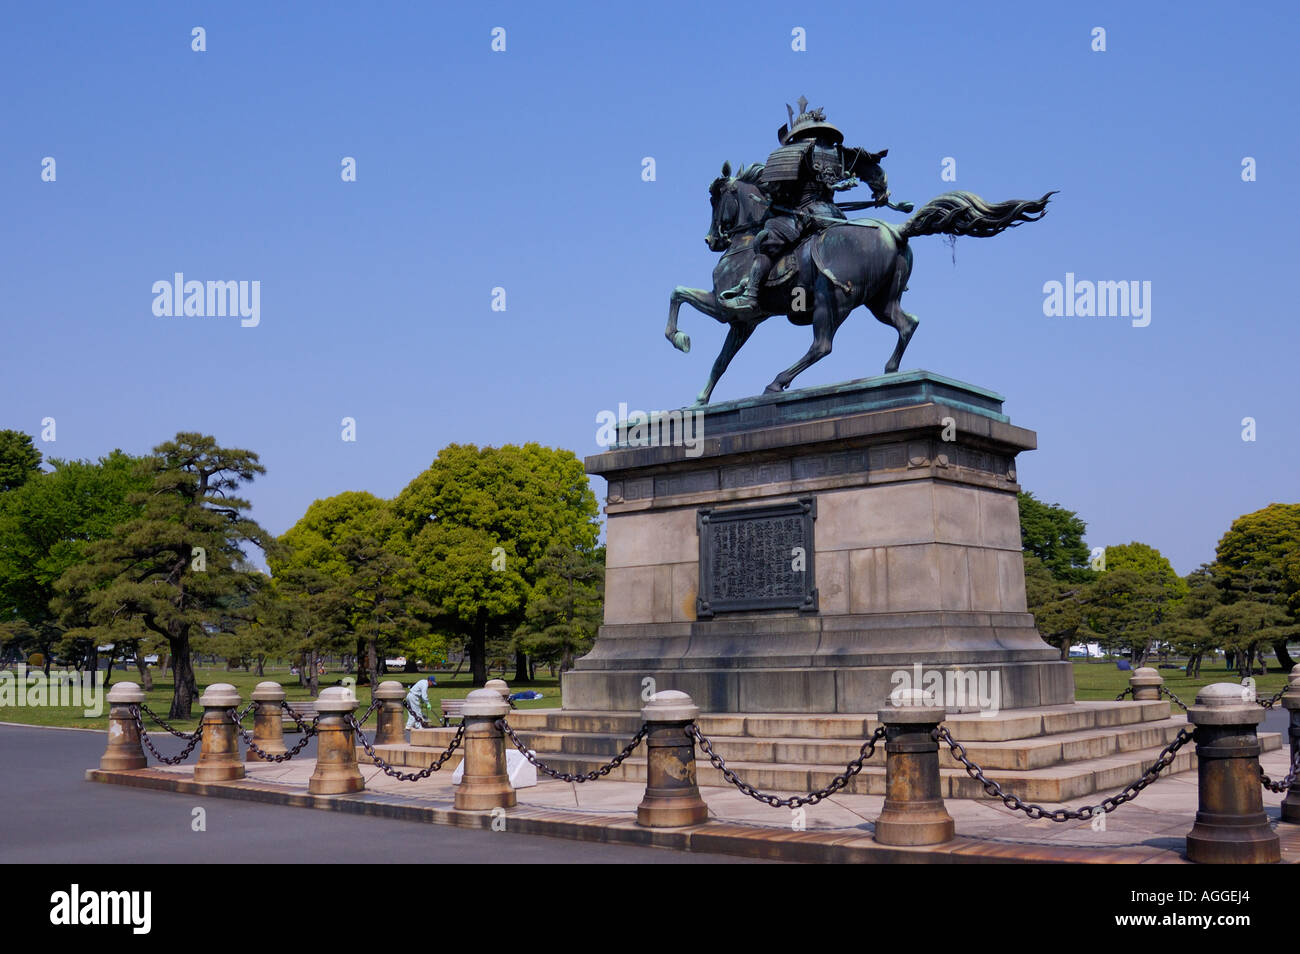 Palazzo imperiale, Kokyo giardino, statua di Kusunoki Masashige (Samurai Warrior), Tokyo, Giappone Foto Stock